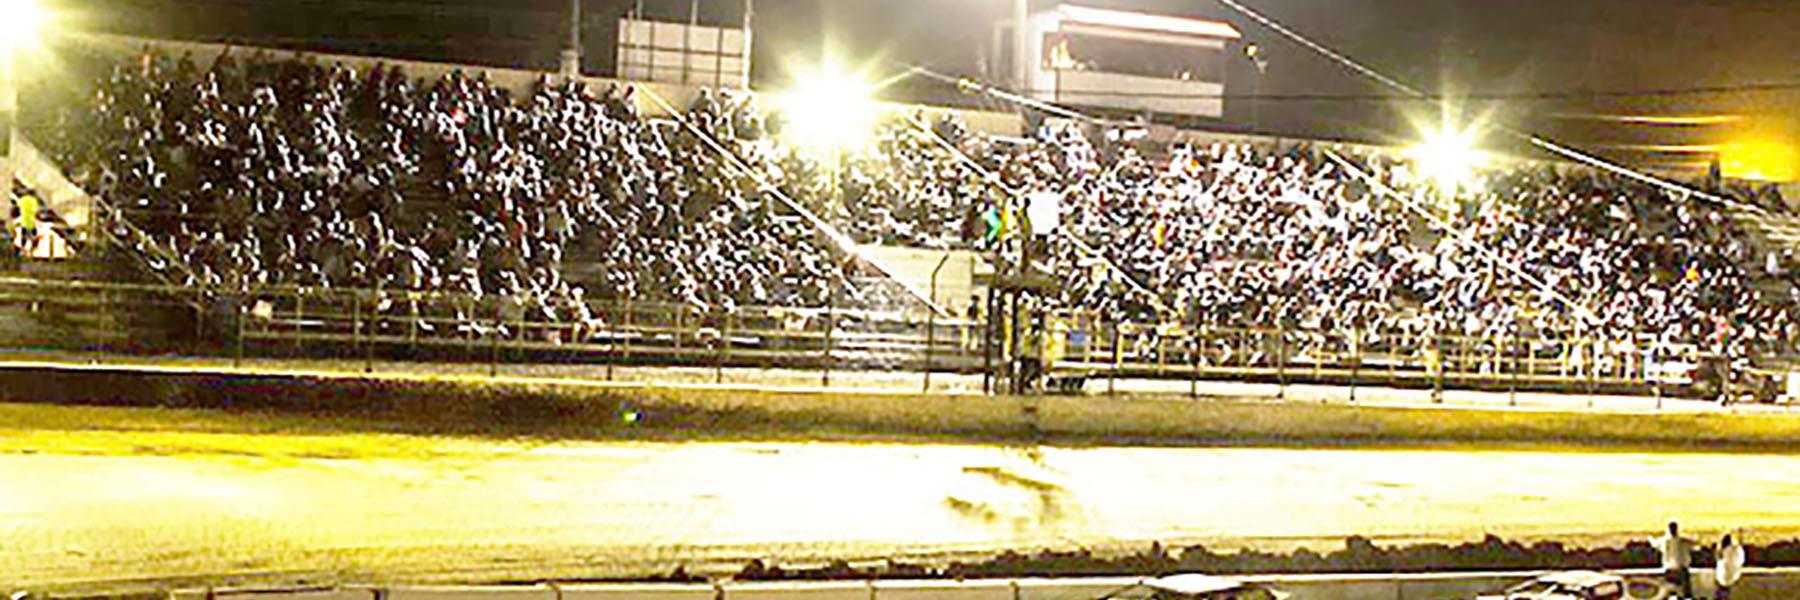 5/14/2022 - Tri-State Speedway